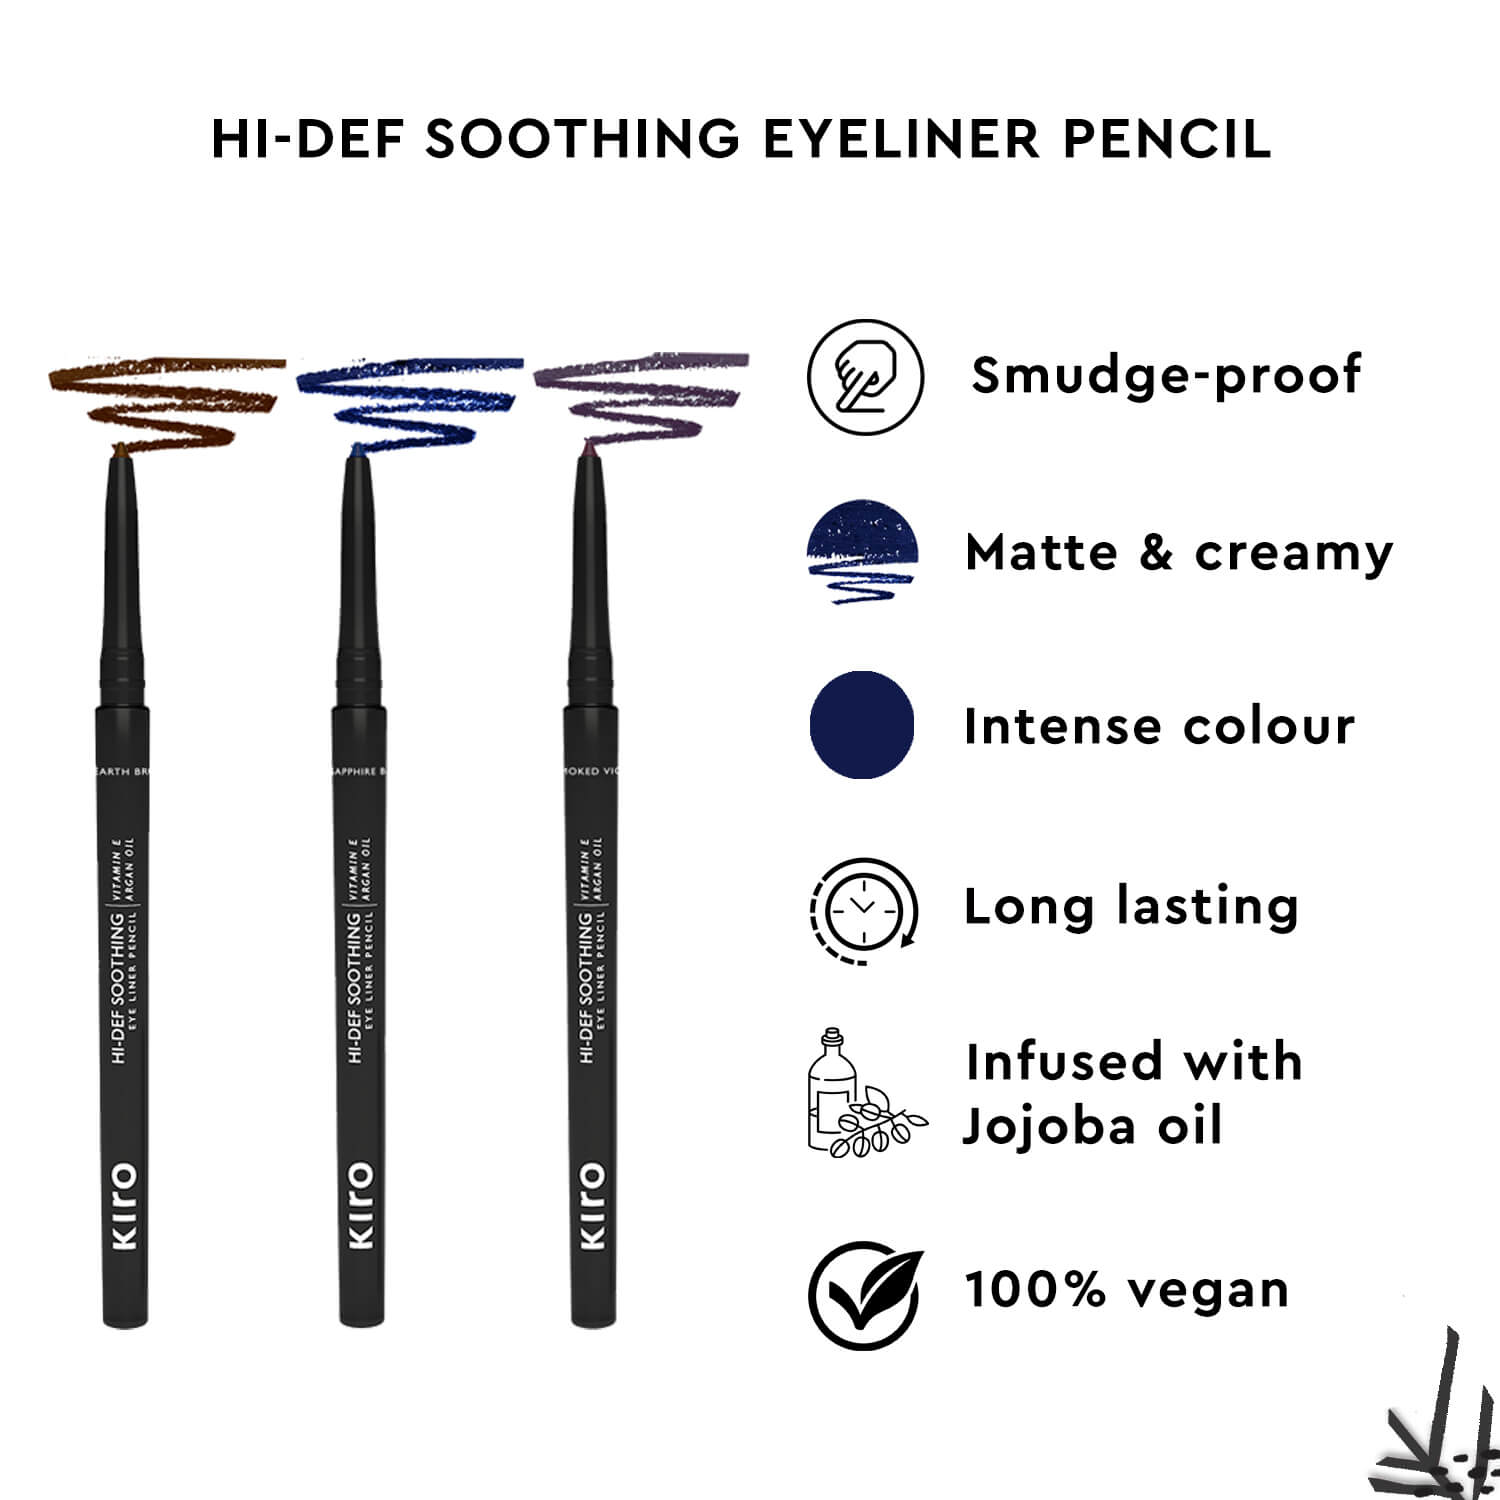 HI - Def Soothing Eyeliner Pencil